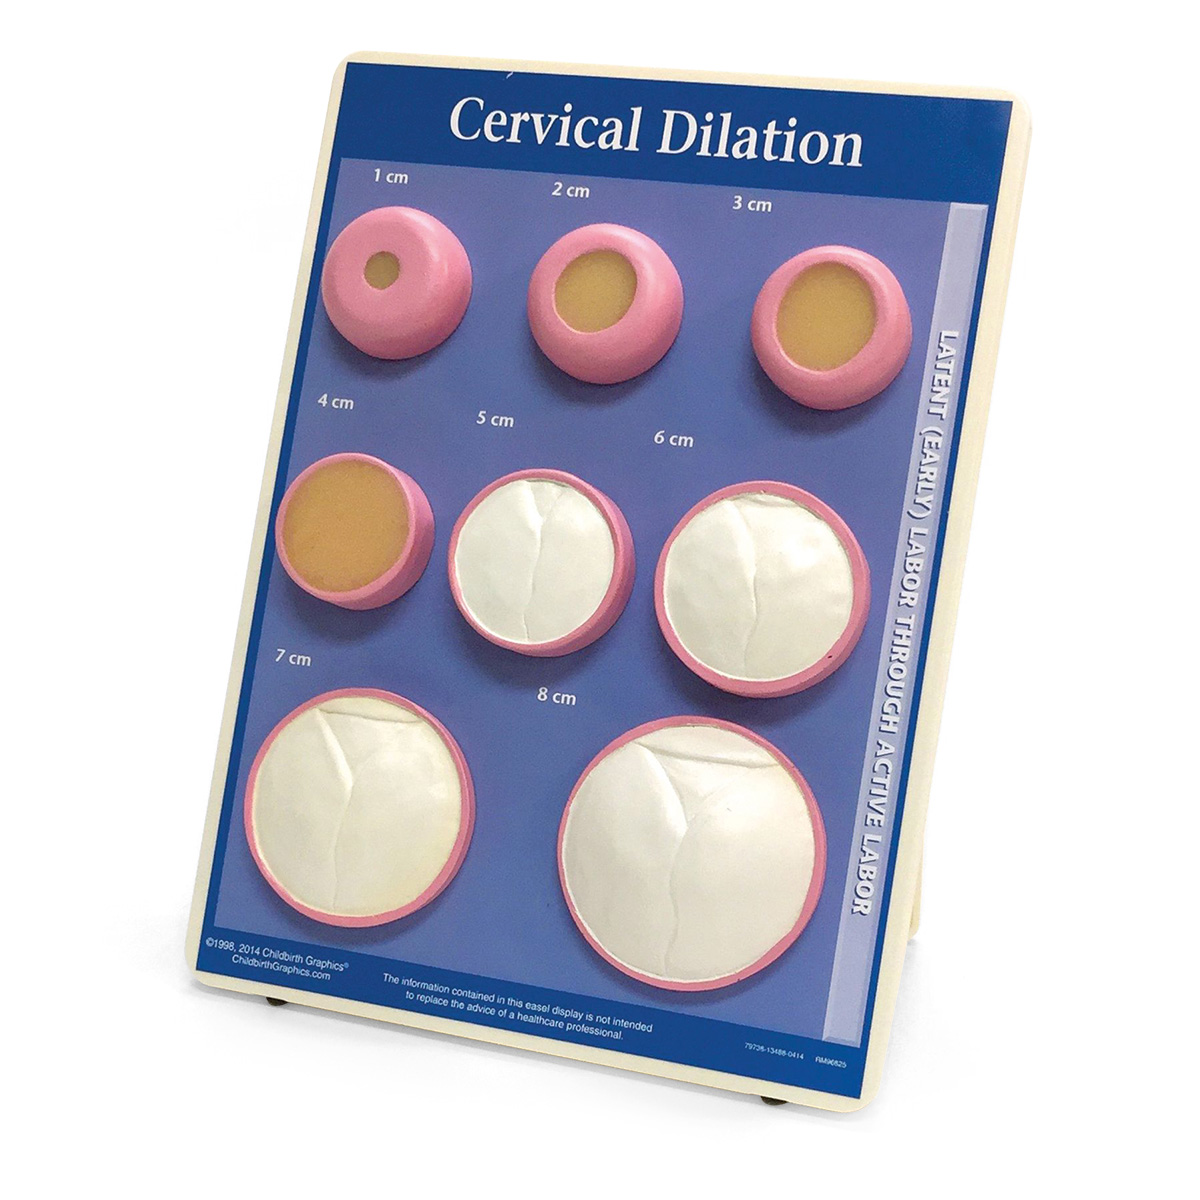 Cervical Dilation Easel Display, Bestellnummer 1012488, W43093, 79738, WRS Group